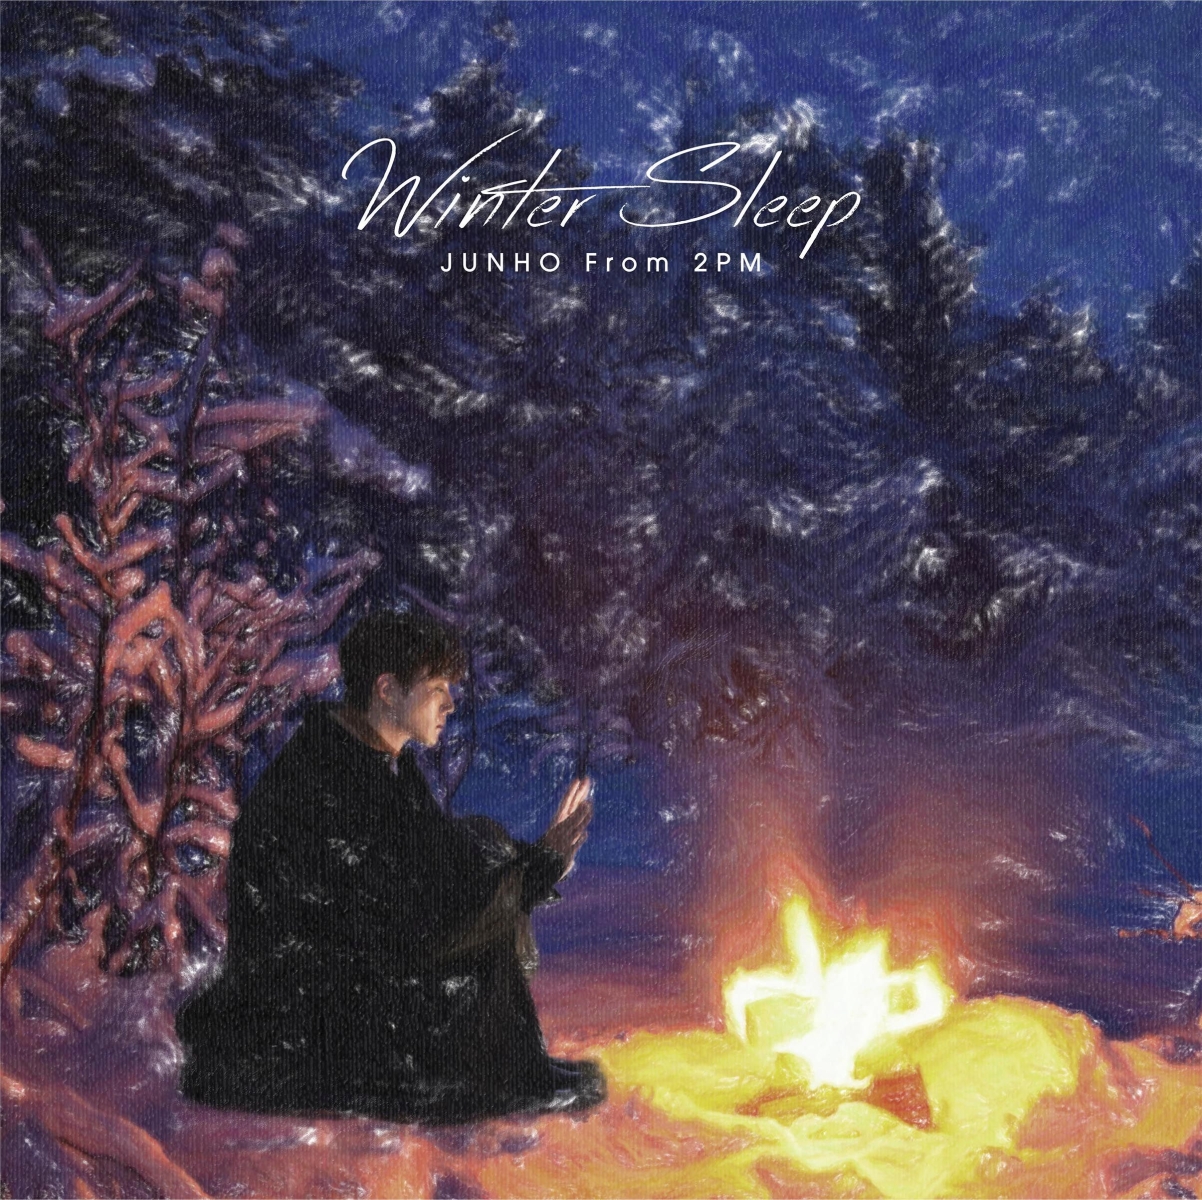 楽天ブックス: Winter Sleep リパッケージ盤 (完全生産限定盤) - JUNHO